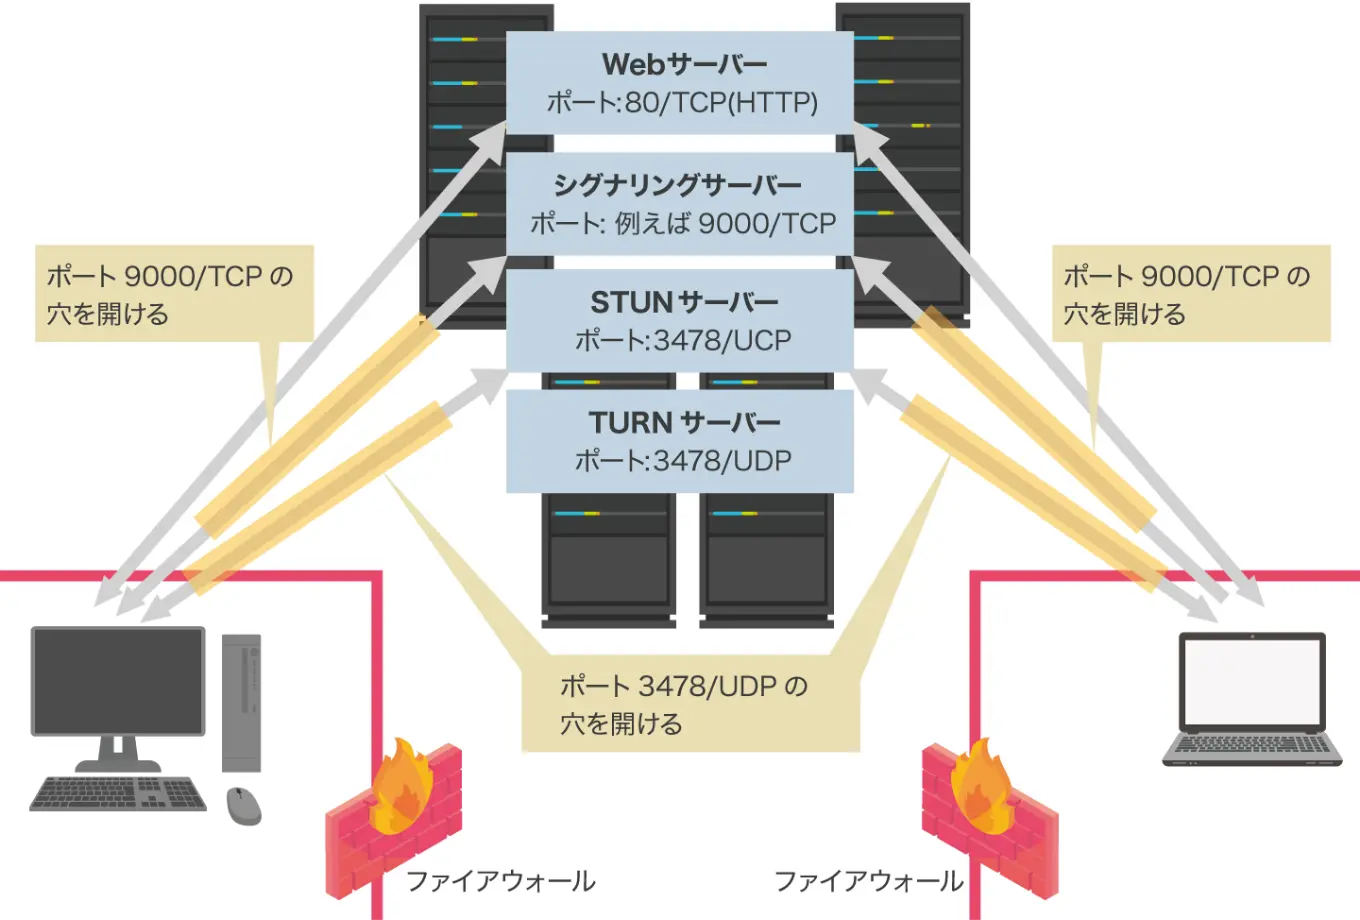 Firewallがある場合のTURNサーバーの図解